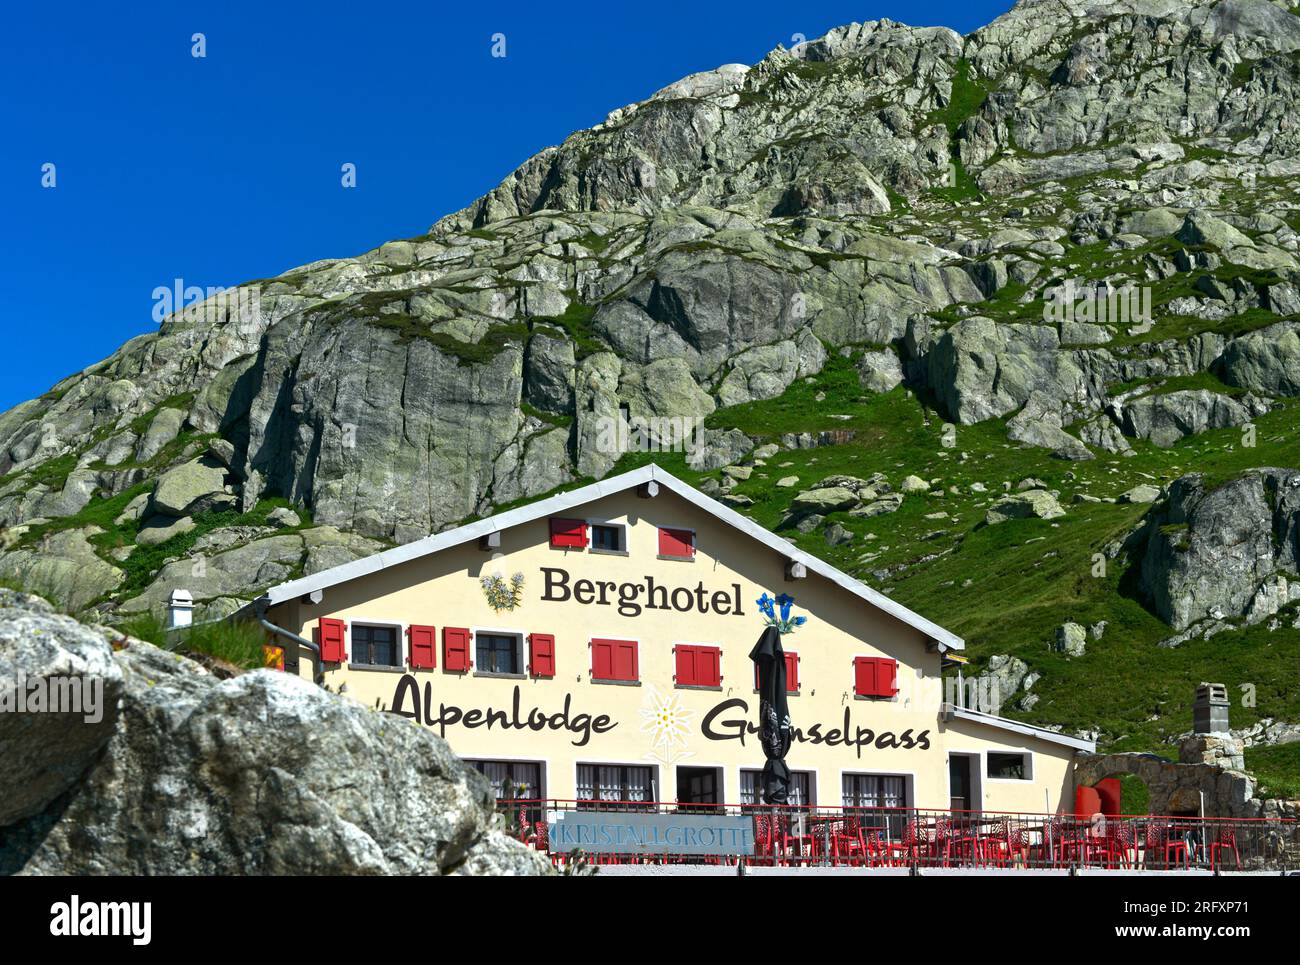 Lodge de montagne et hôtel Grimselpass, Oberwald, Valais, Suisse Banque D'Images